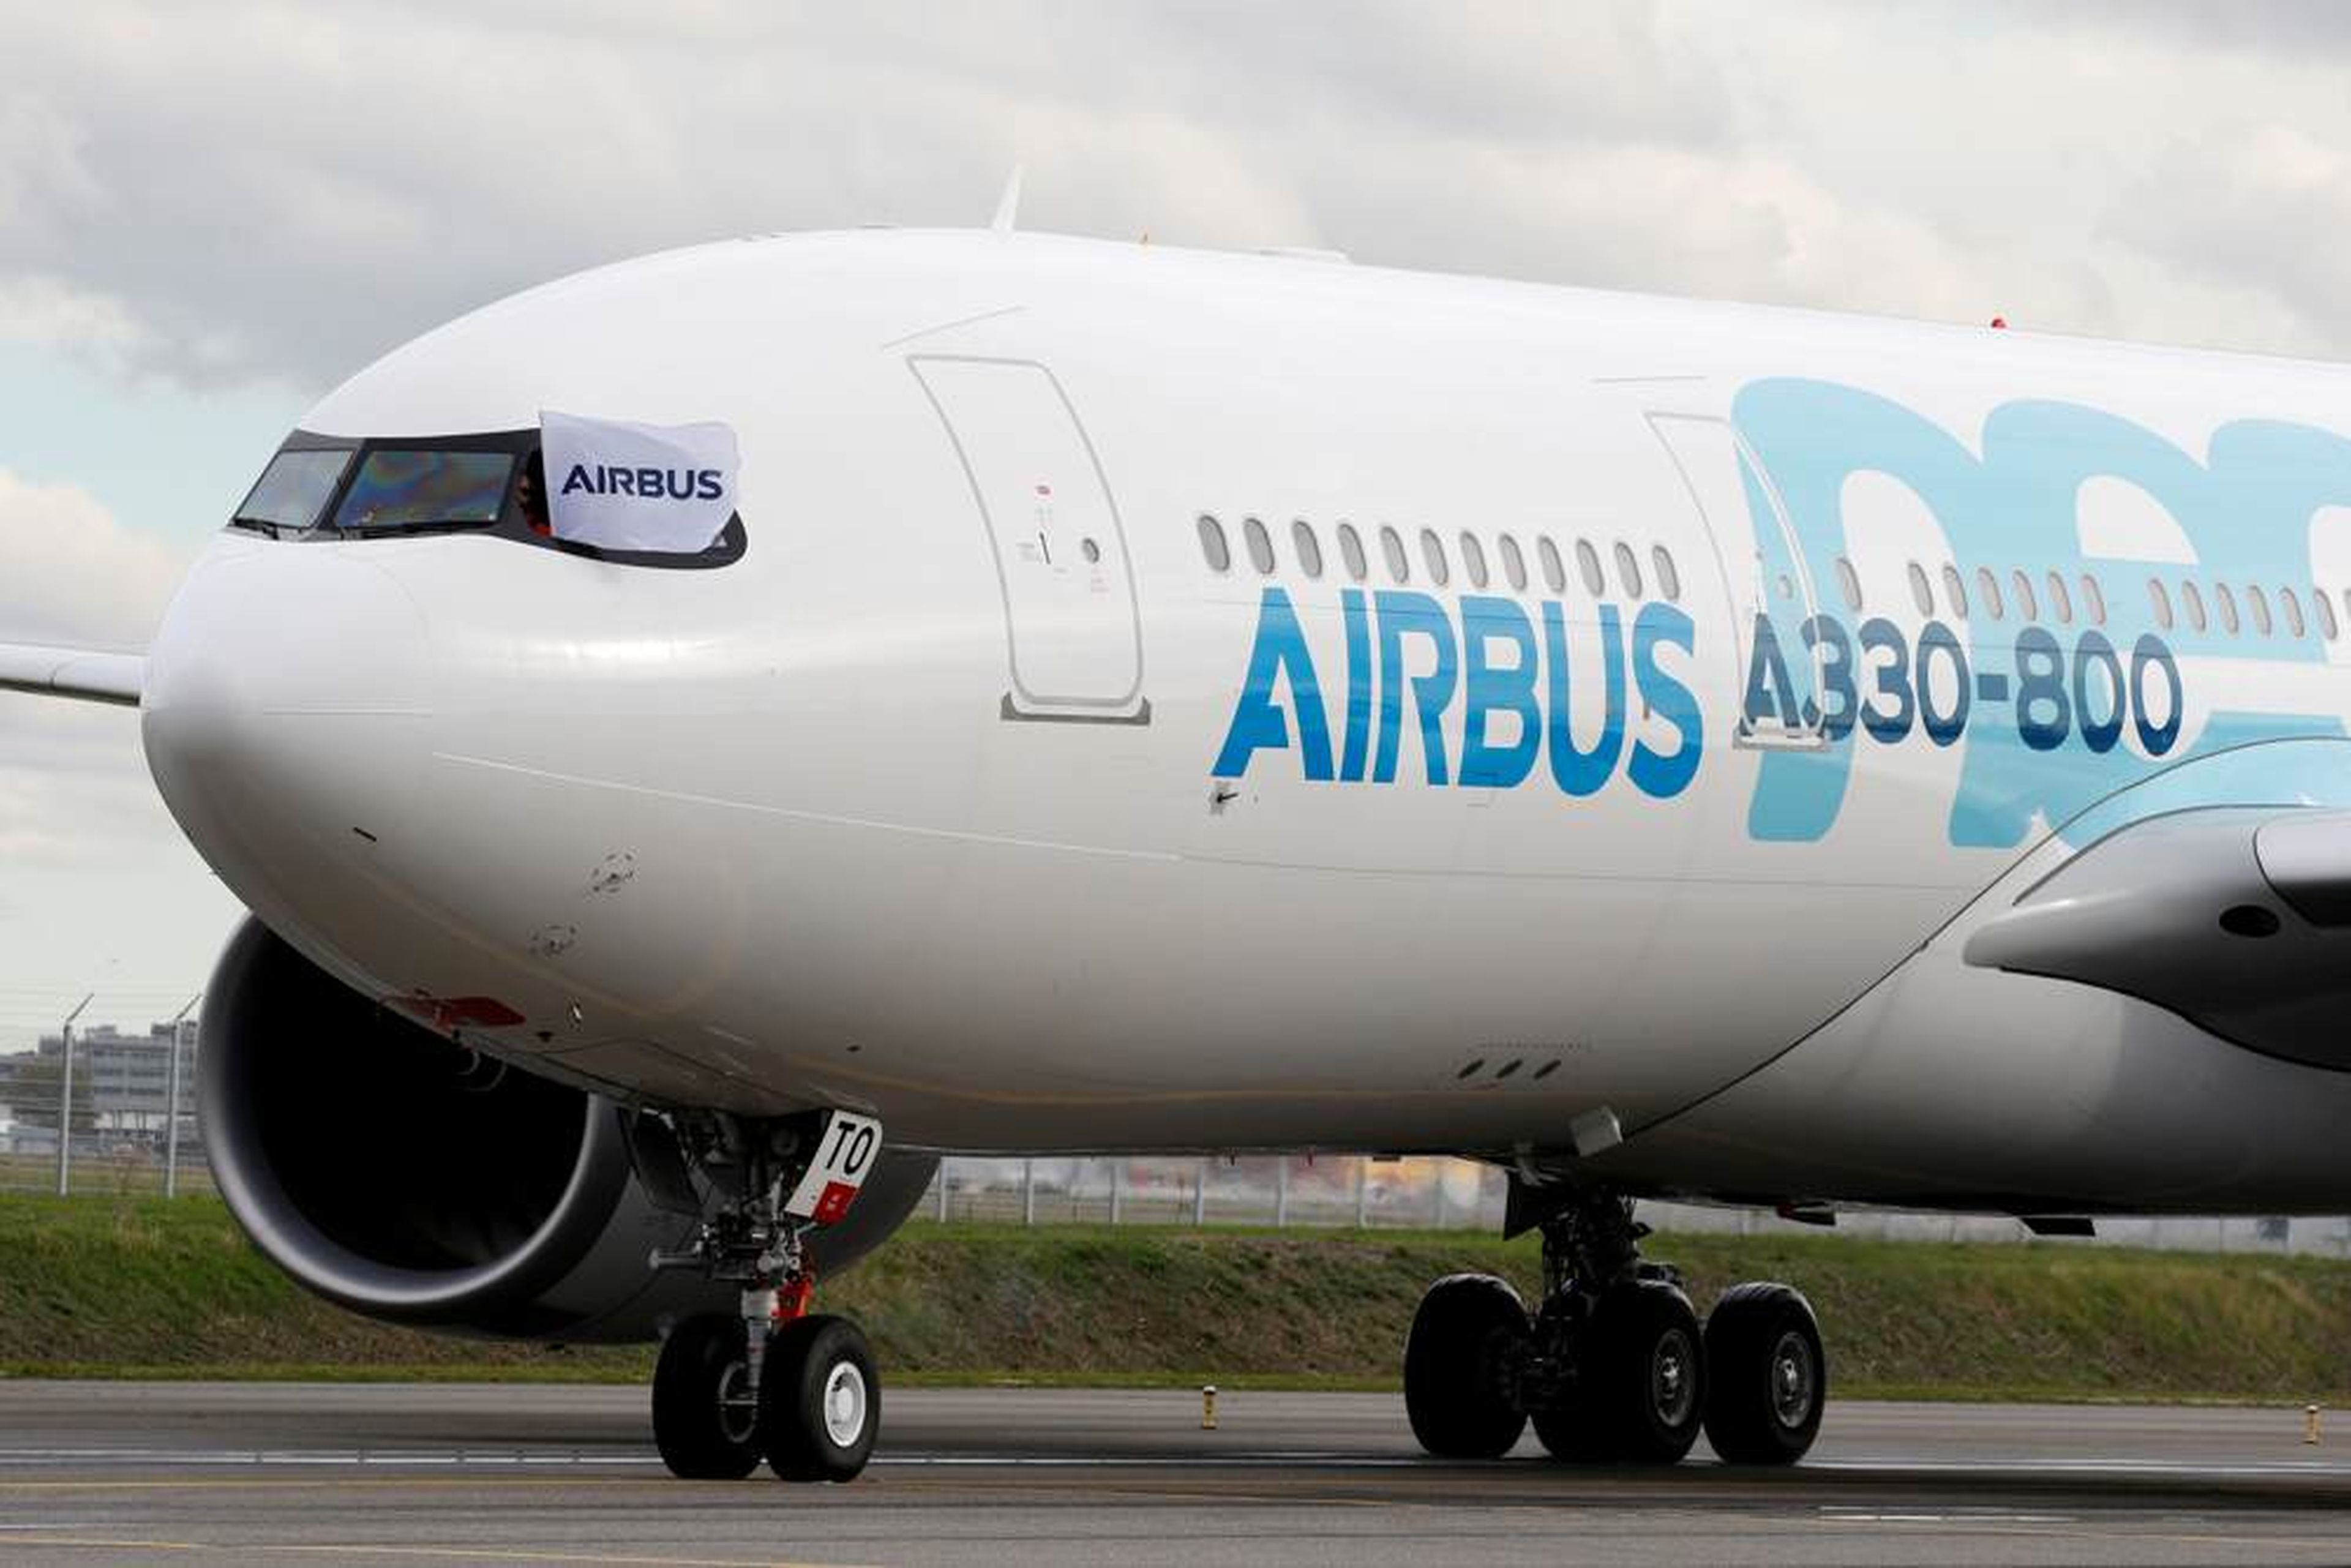 Un avión Airbus A330-800 aterriza después de una presentación de un vuelo en Colomiers cerca de Toulouse.